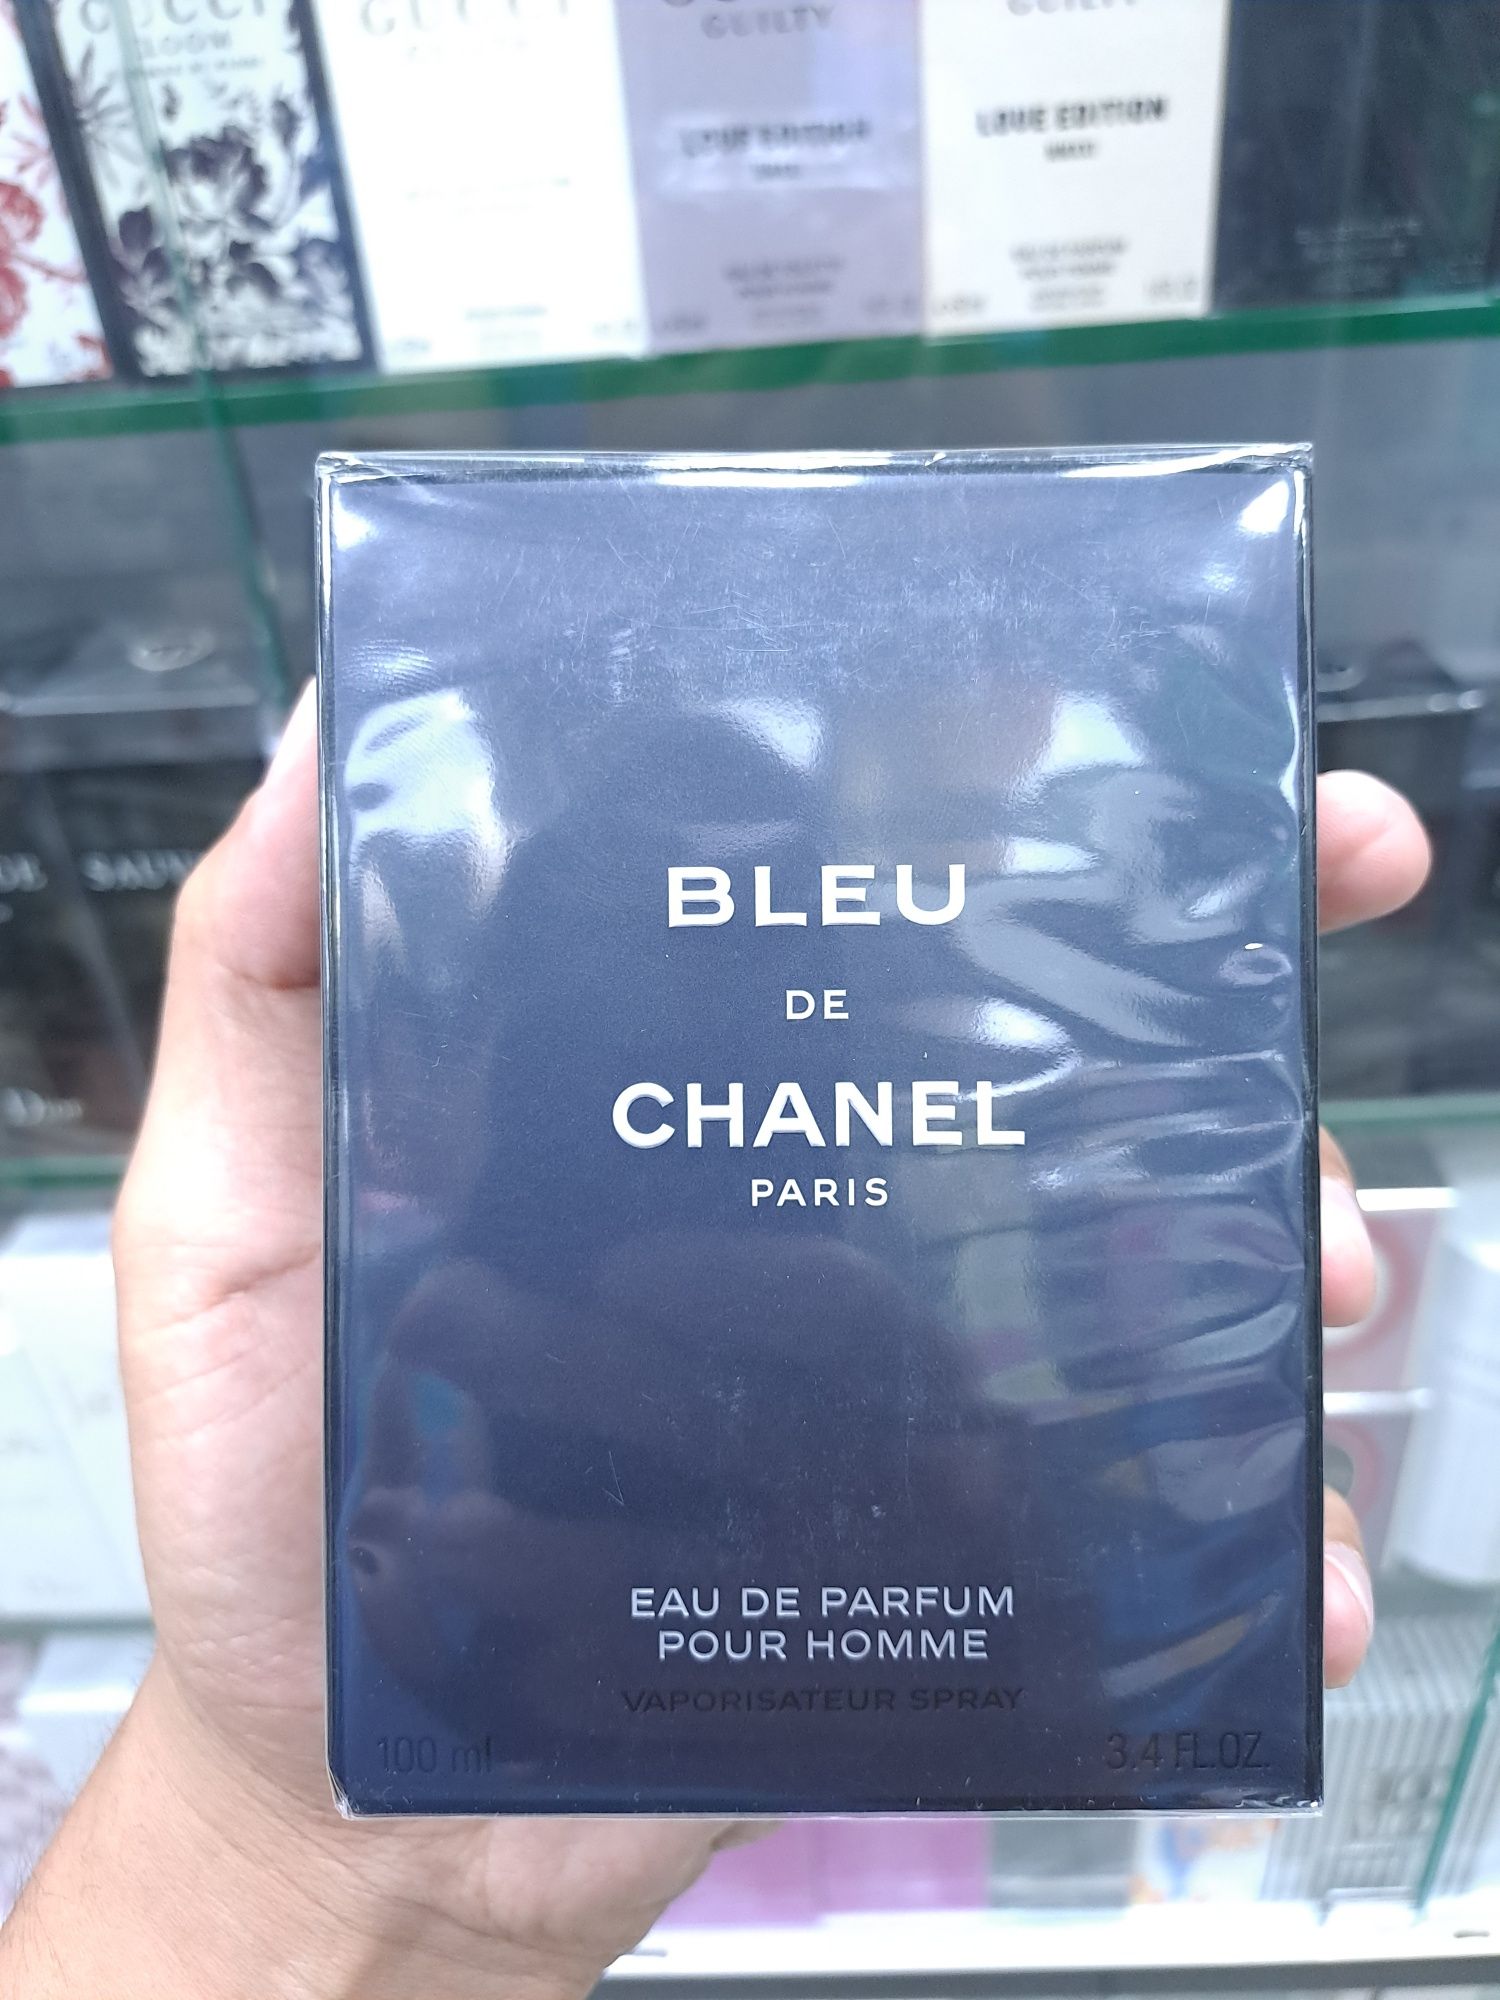 Blue de chanel Eau de Parfum